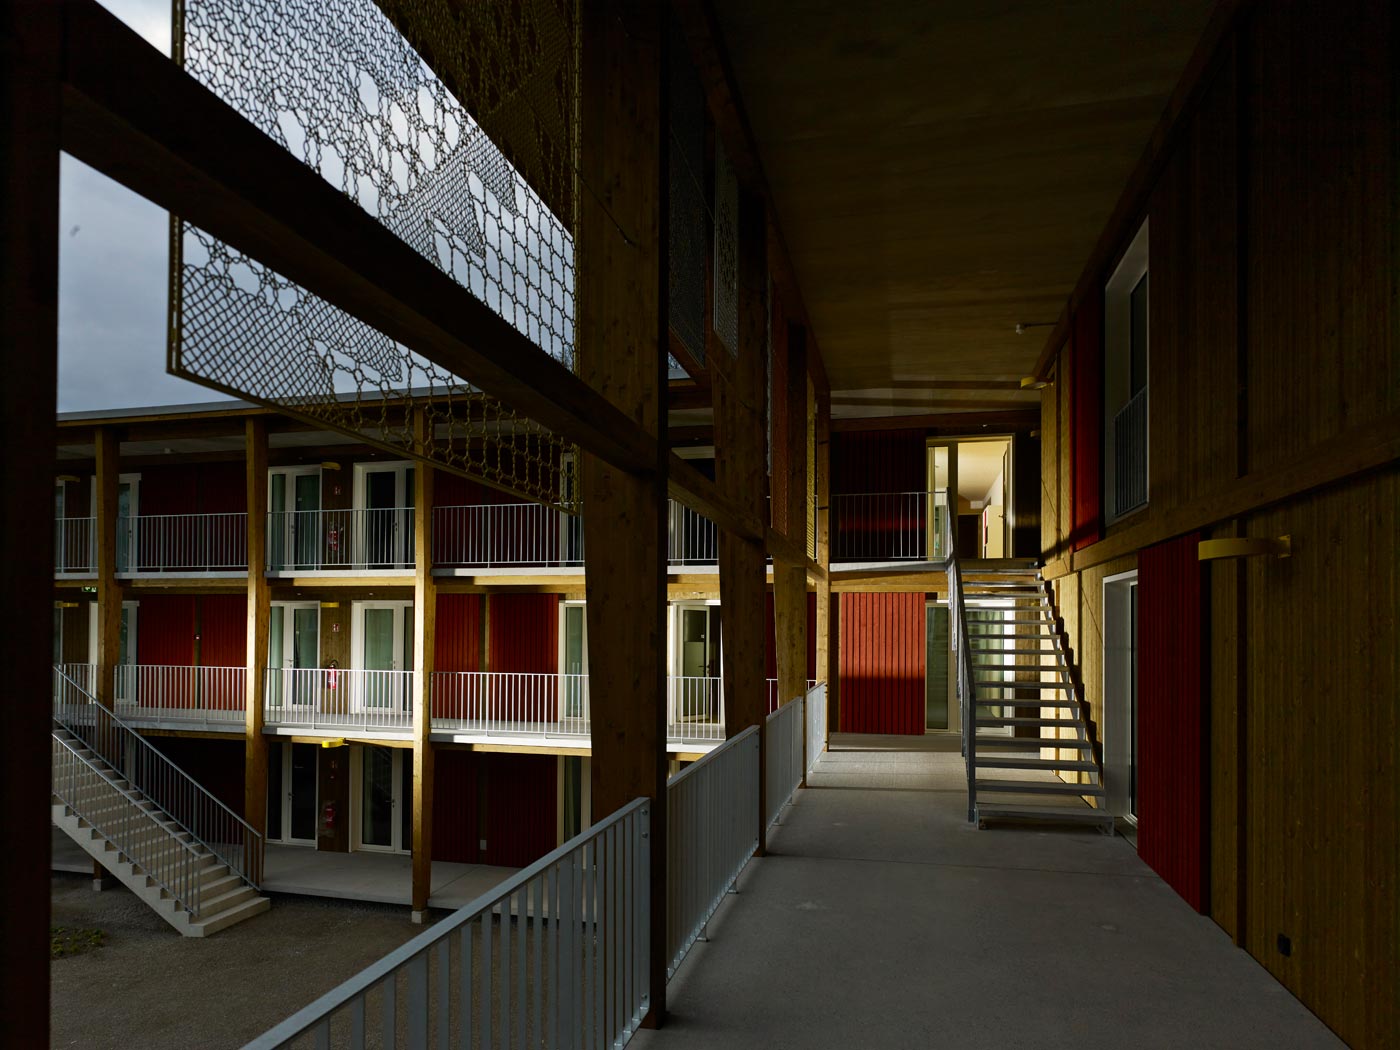 Durchgangszentrum Adliswil. Azzola Durisch Architekten, Zürich